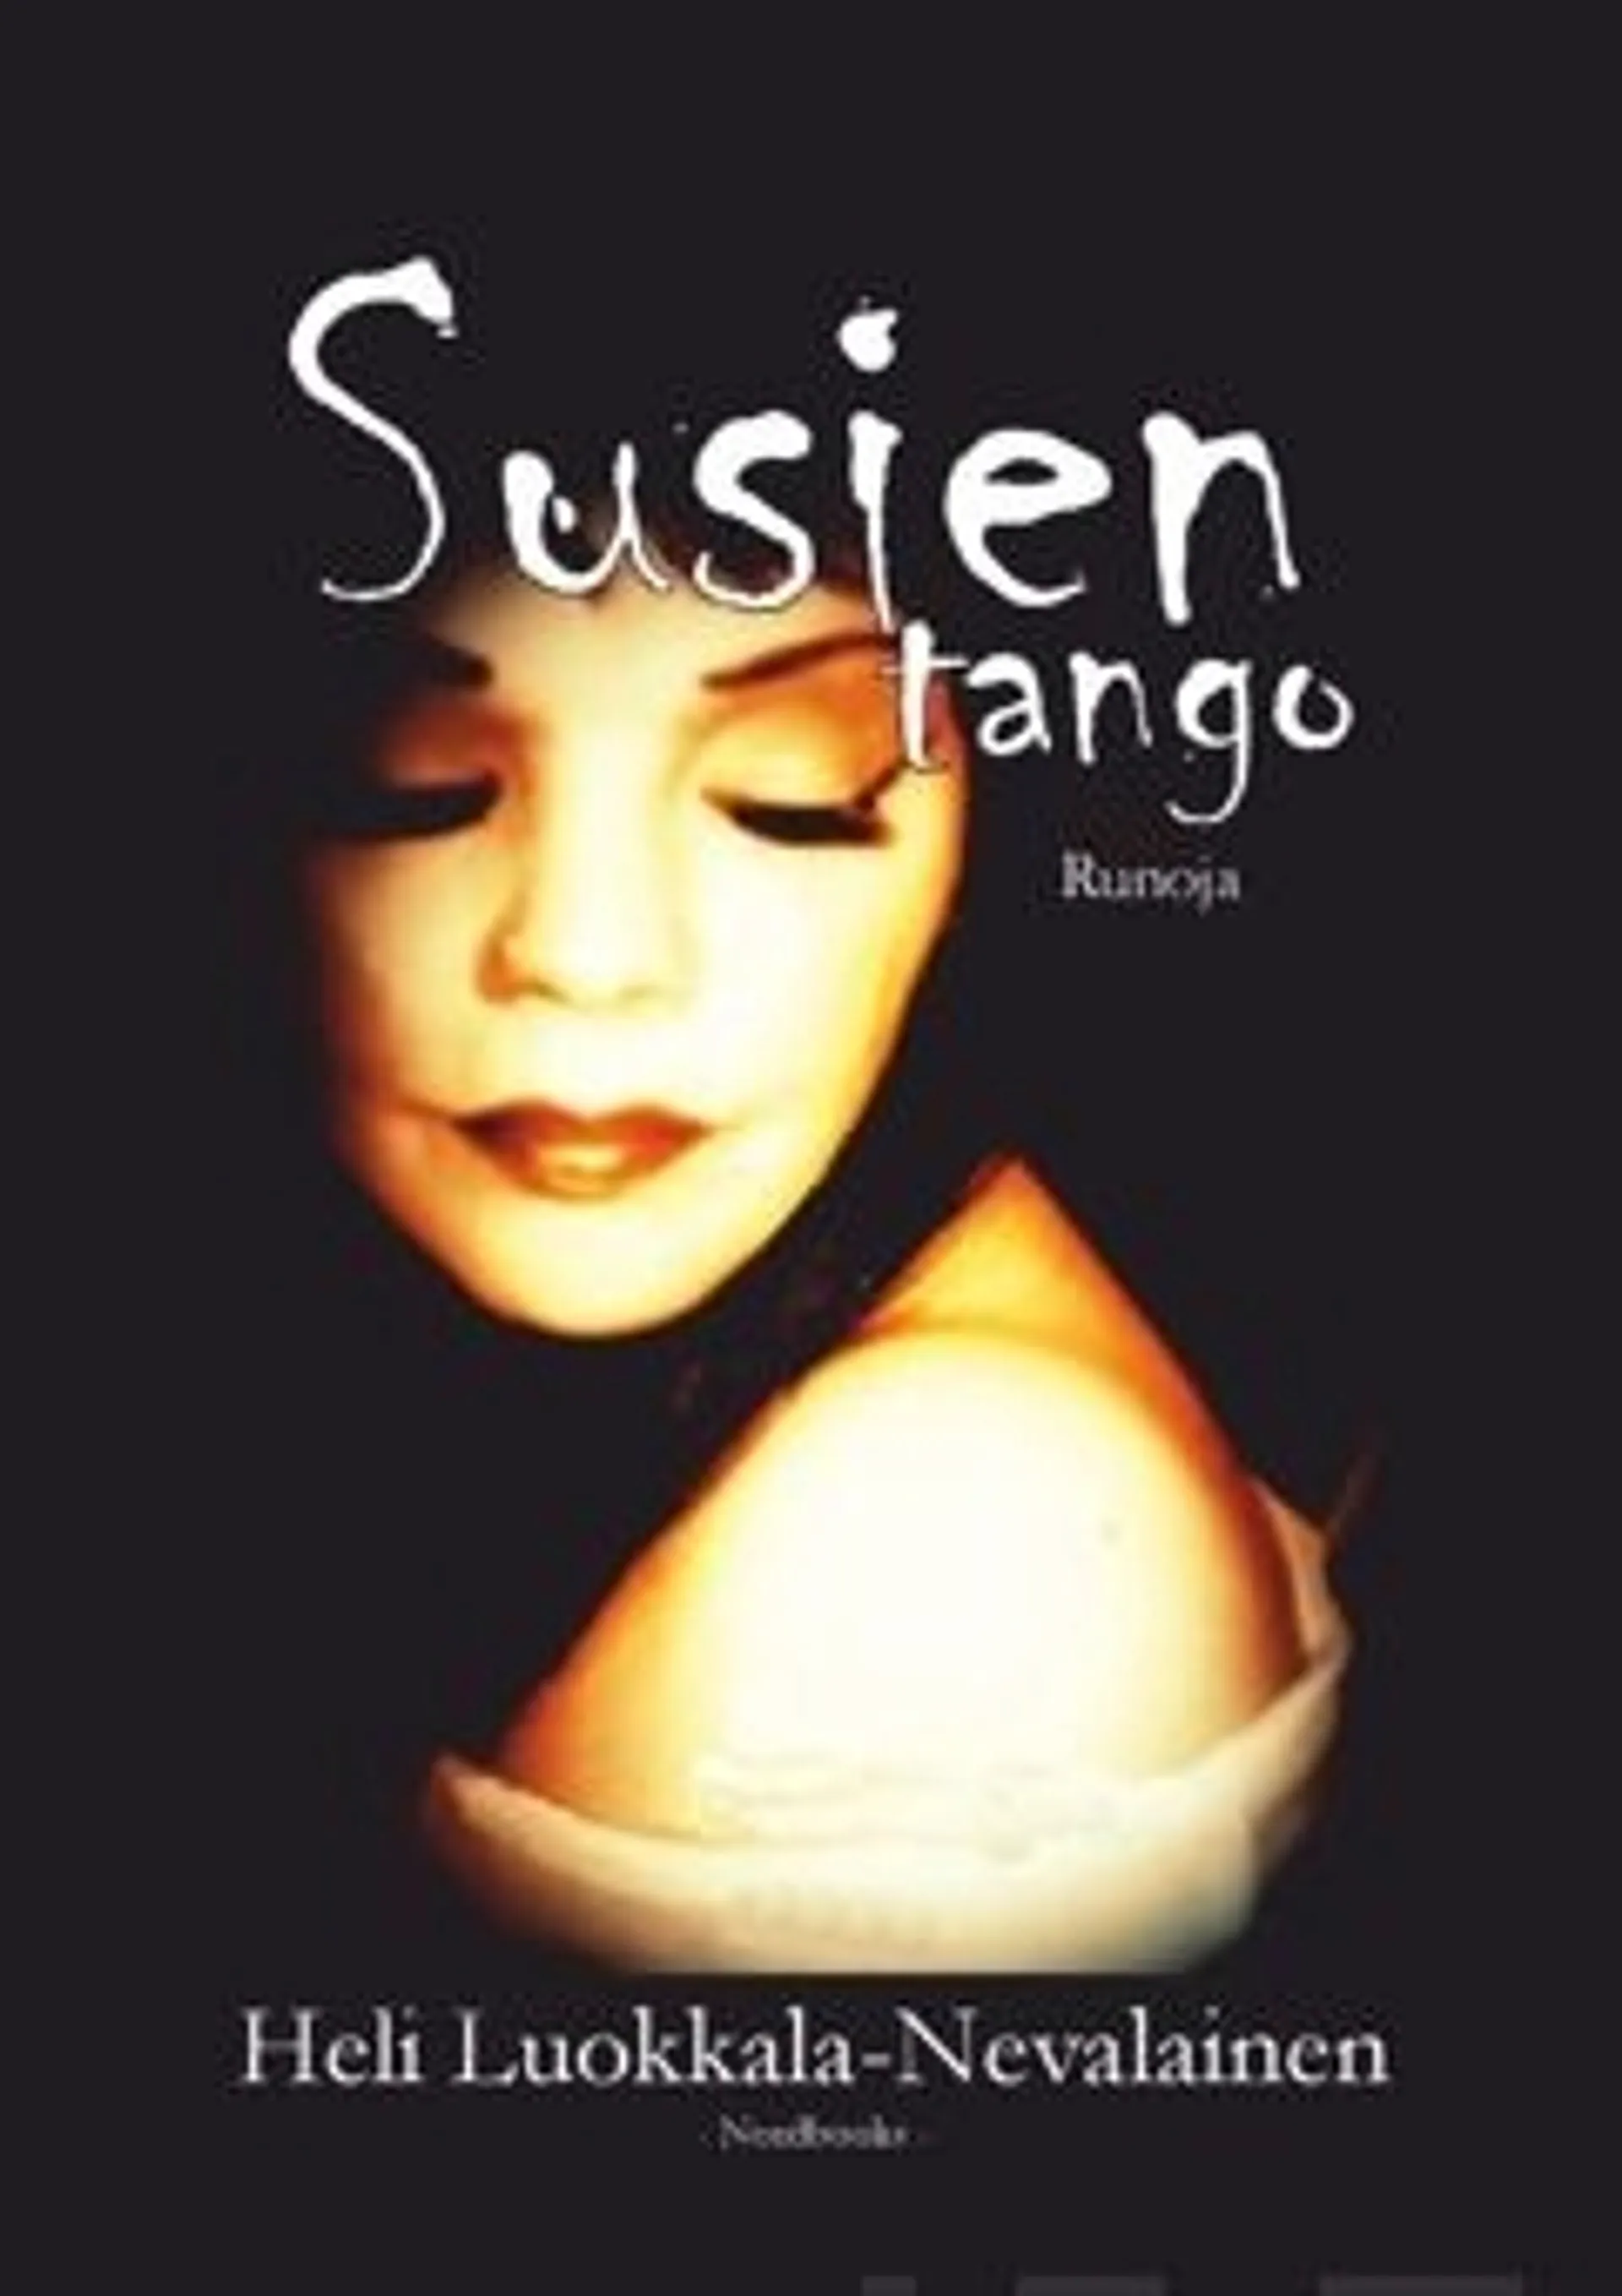 Luokkala-Nevalainen, Susien tango